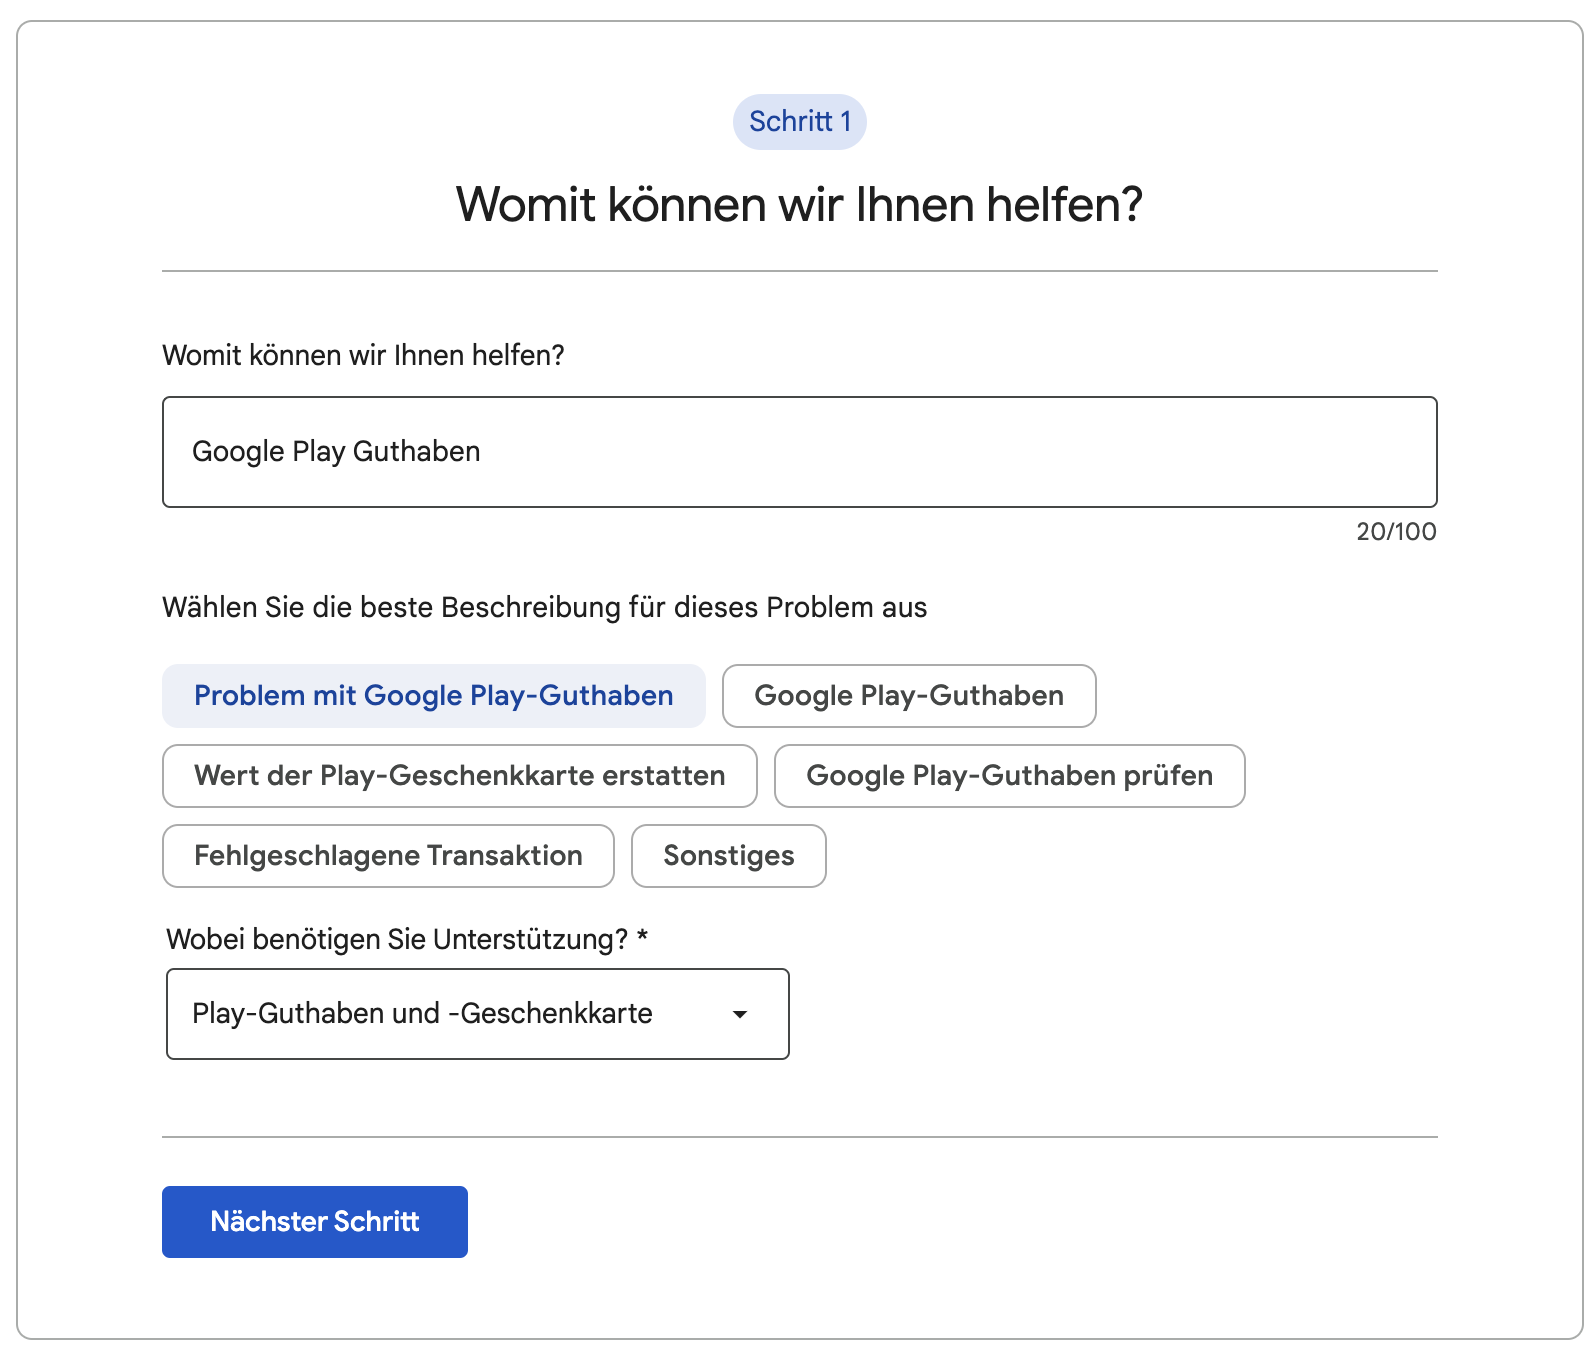 Googleplay Aufladen hat nicht funktioniert! Ich habe gestern Abend über die  www.guthaben.de gekauft. - Google Play-Community